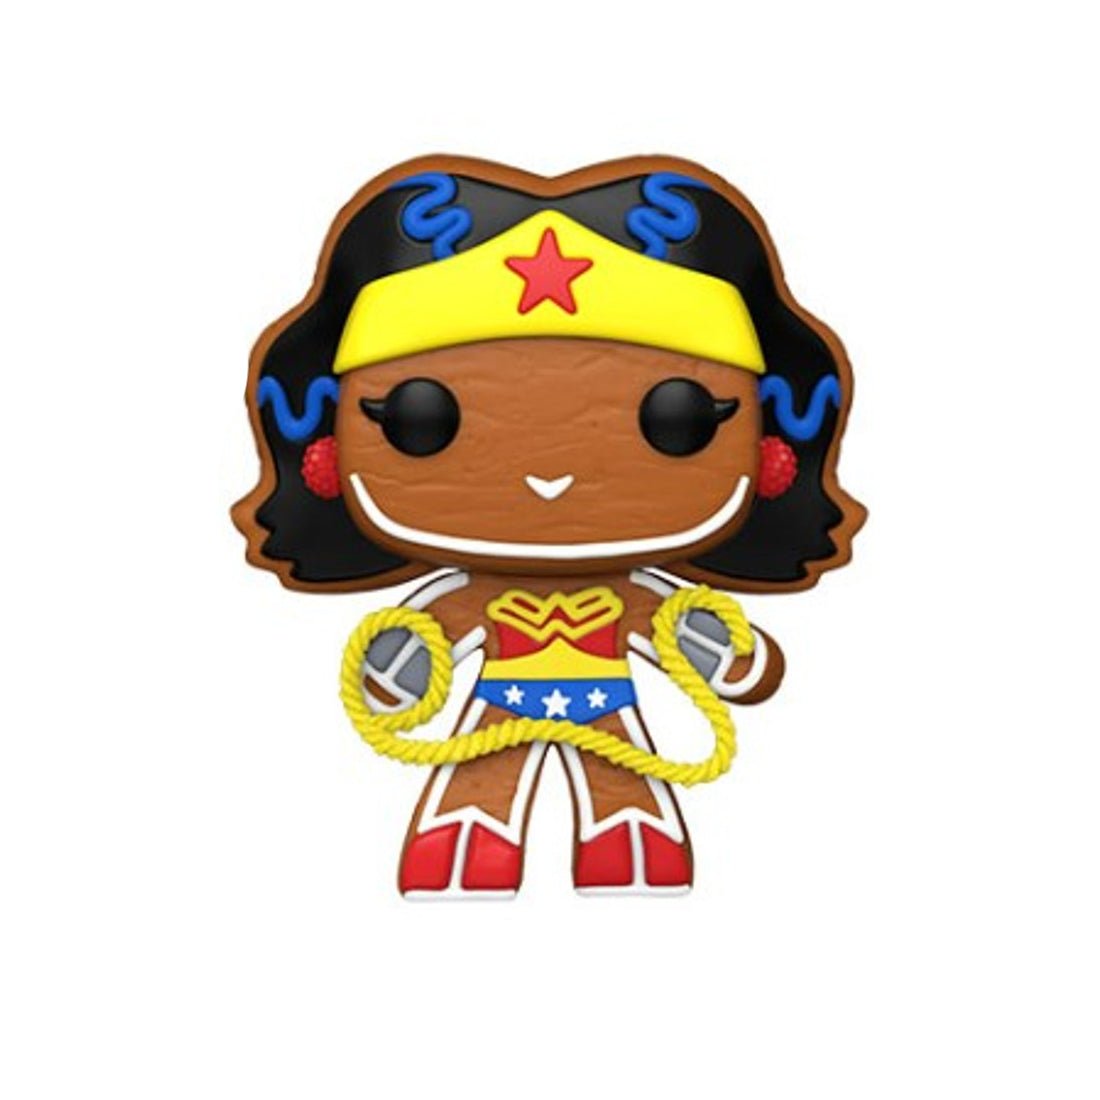 Funko Pop! Heroes: DC Super Heroes - Gingerbread Wonder Woman #446 - دمية - Store 974 | ستور ٩٧٤